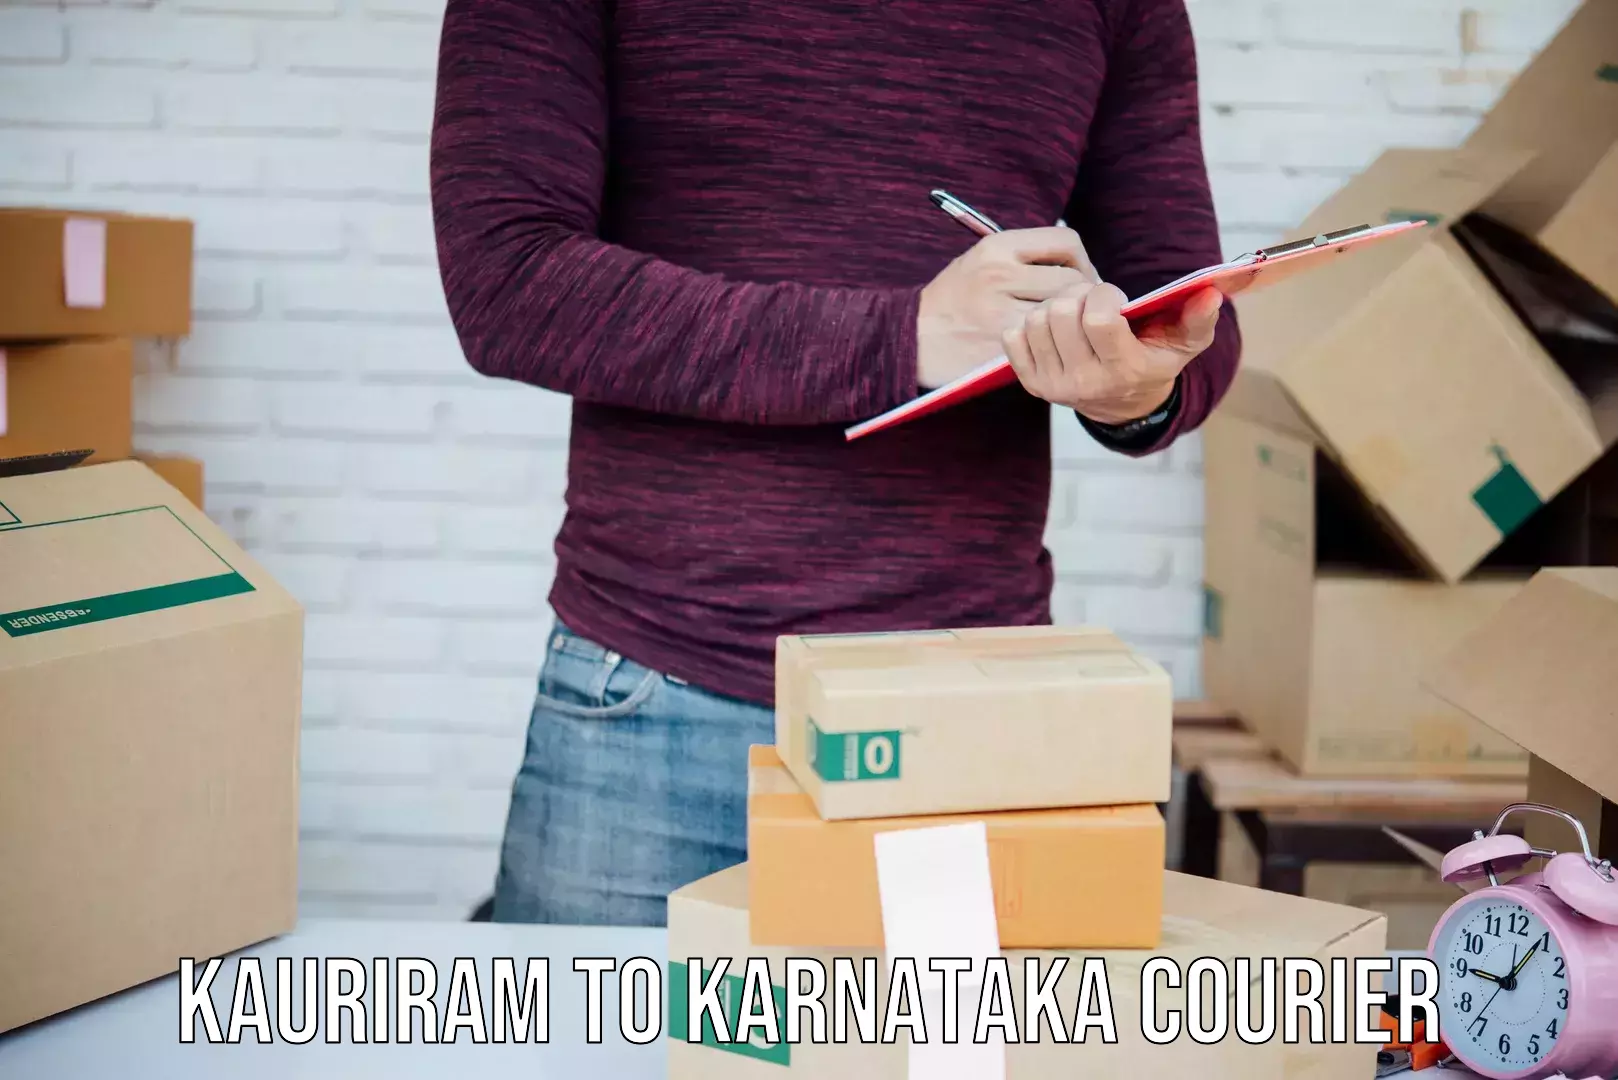 Bulk courier orders in Kauriram to Karnataka